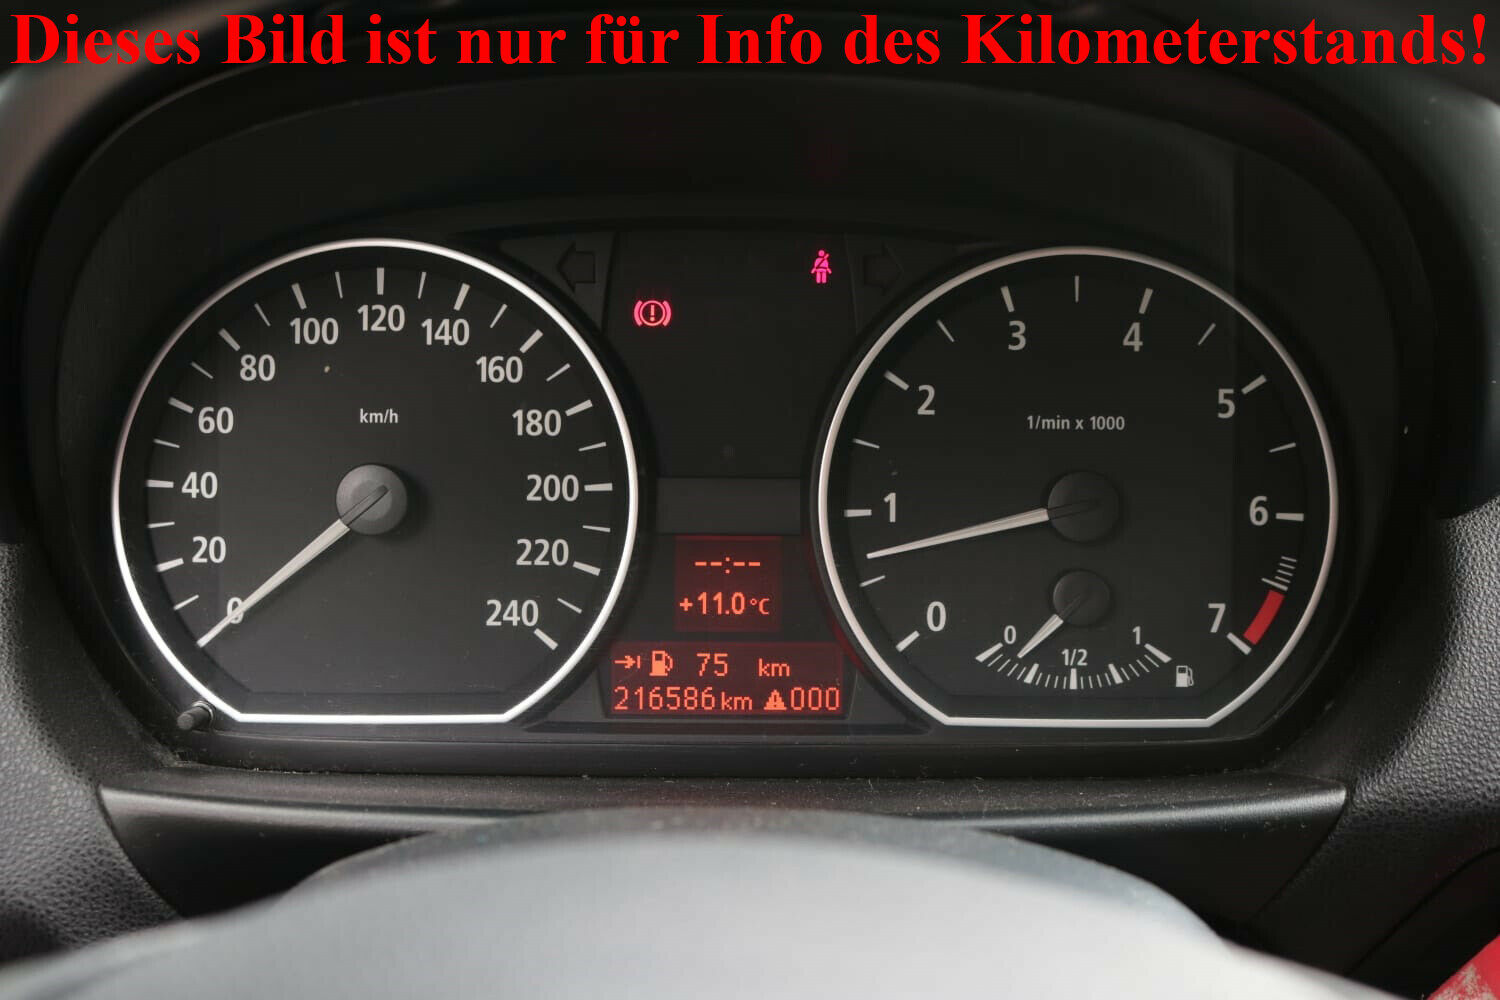 motorabdeckung vibriert - Startseite Forum Auto BMW